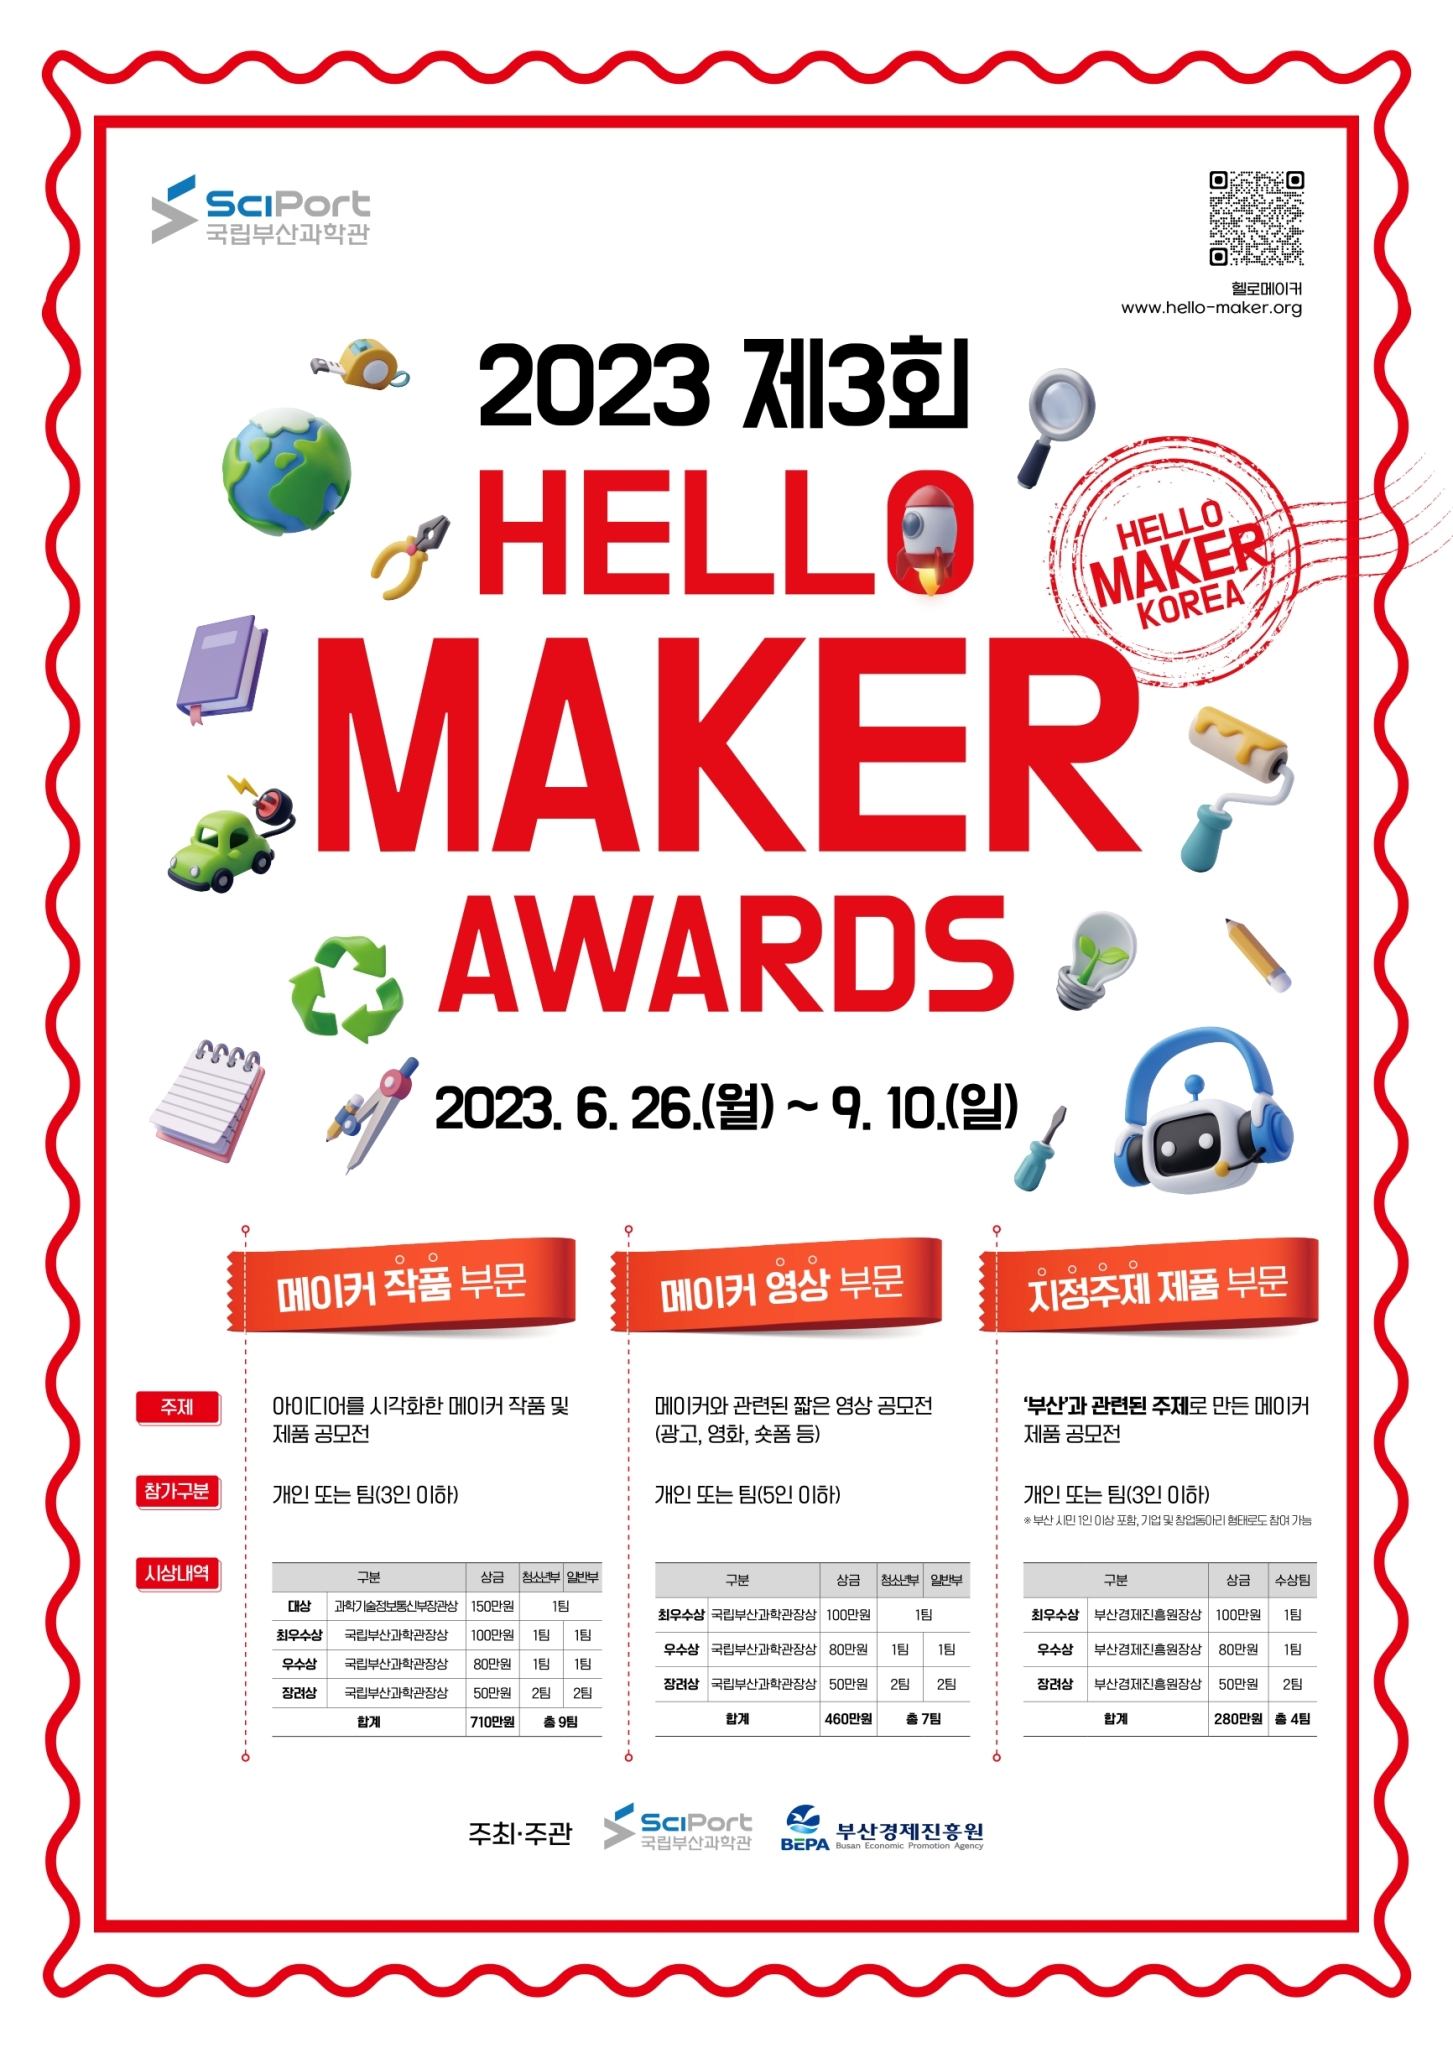 국립부산과학관 디지털기획팀_붙임1. 「2023 제3회 HELLO MAKER AWARDS」 공모전 포스터